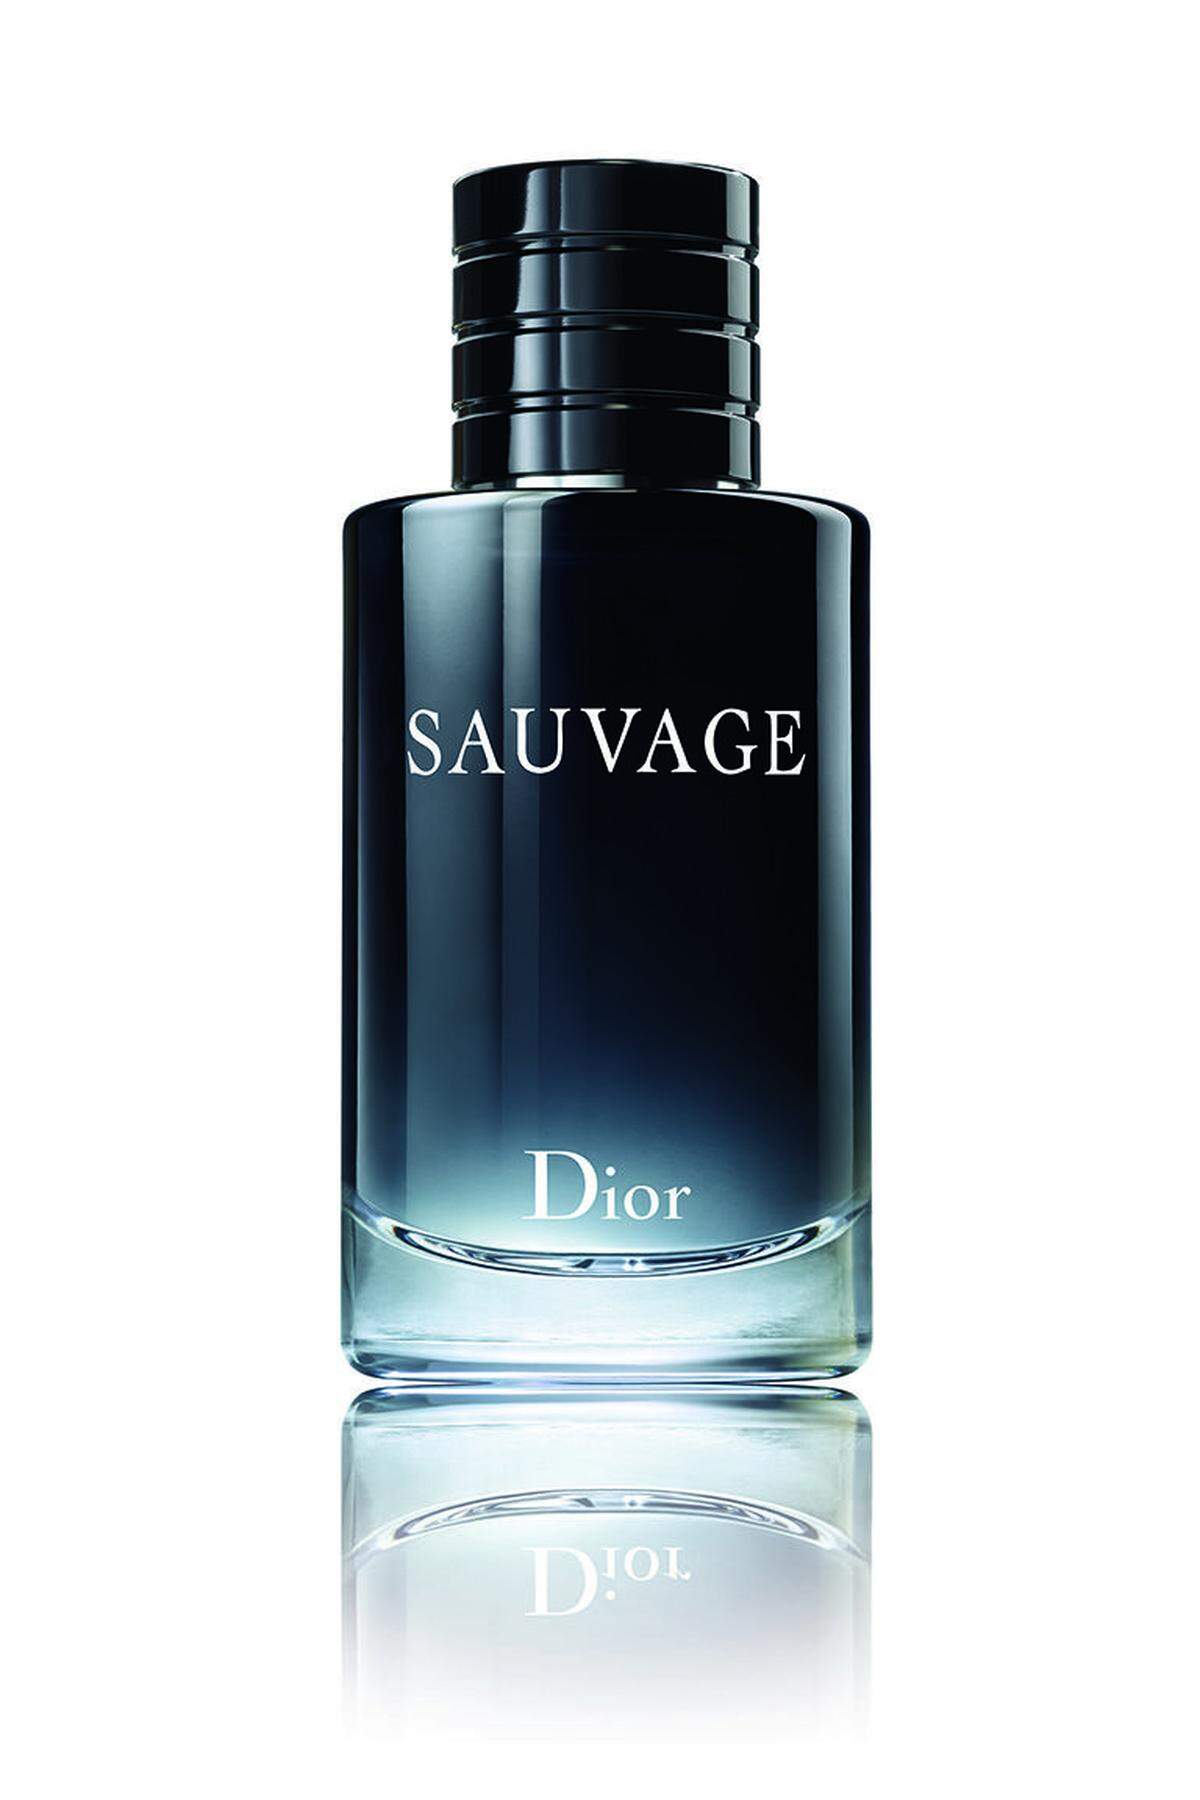 Der neuen Duft "Sauvage" von Dior komplettiert das Bild.